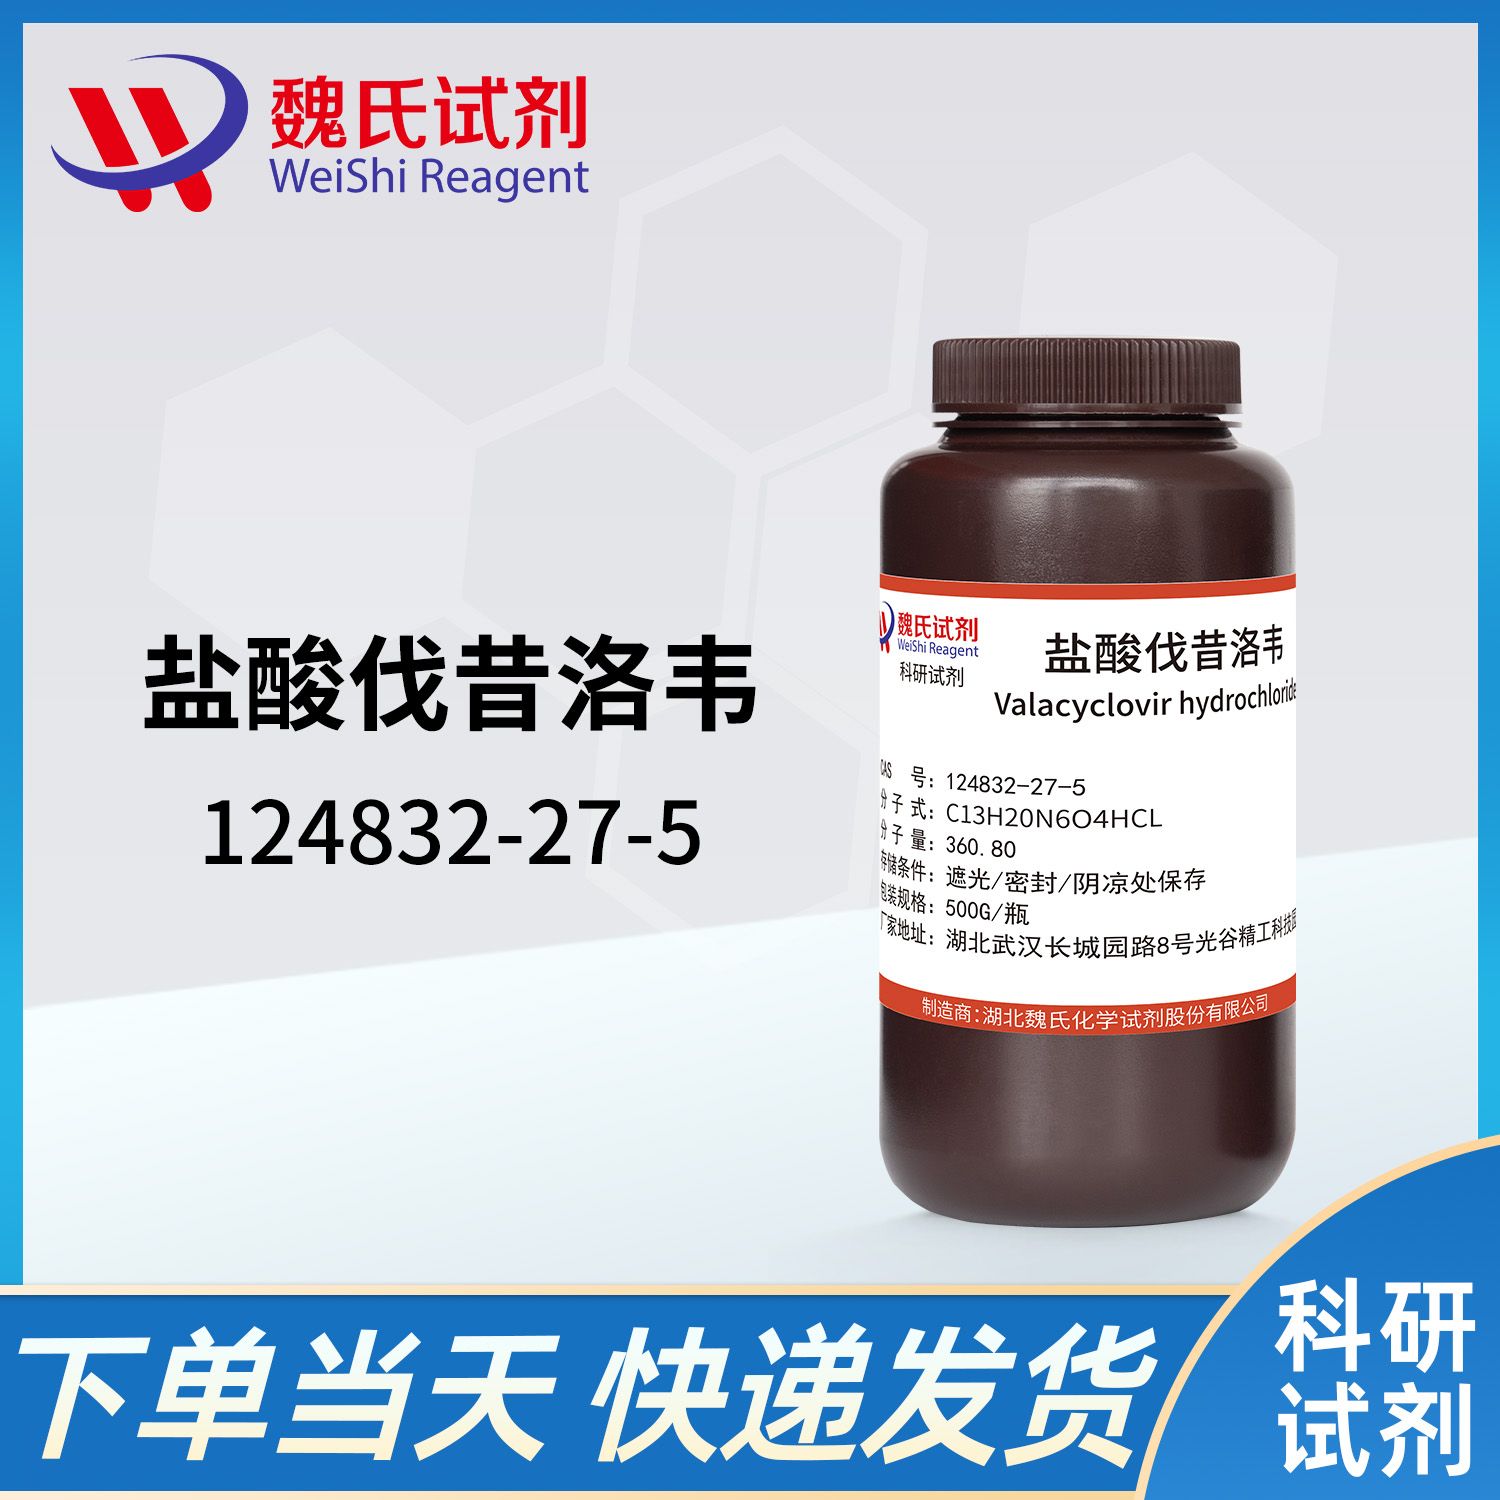 124832-27-5/盐酸万乃洛韦/Valacyclovir hydrochloride